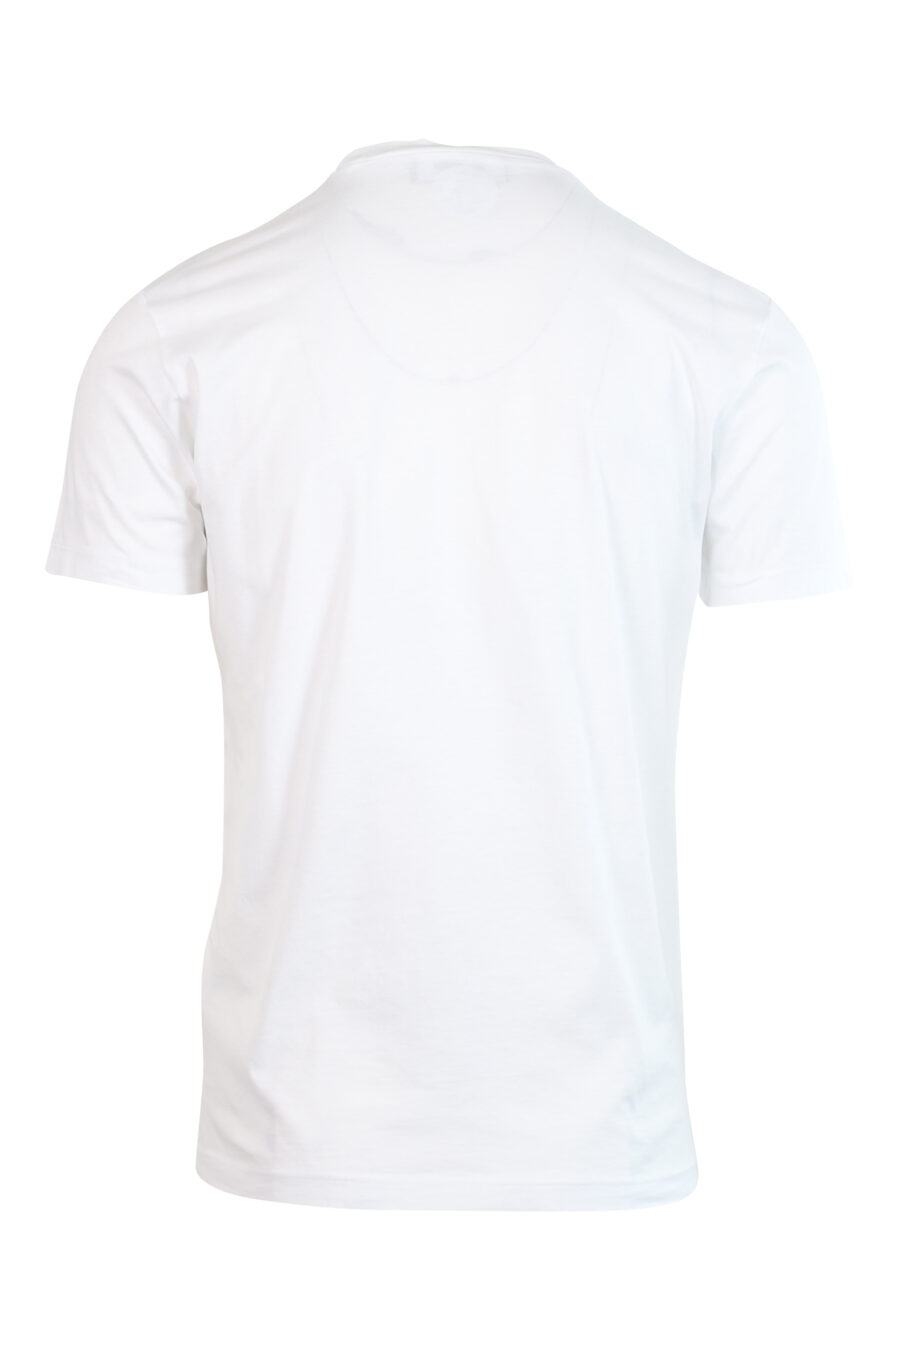 T-shirt branca com maxilogo "ícone" vertical - 8052134980989 2